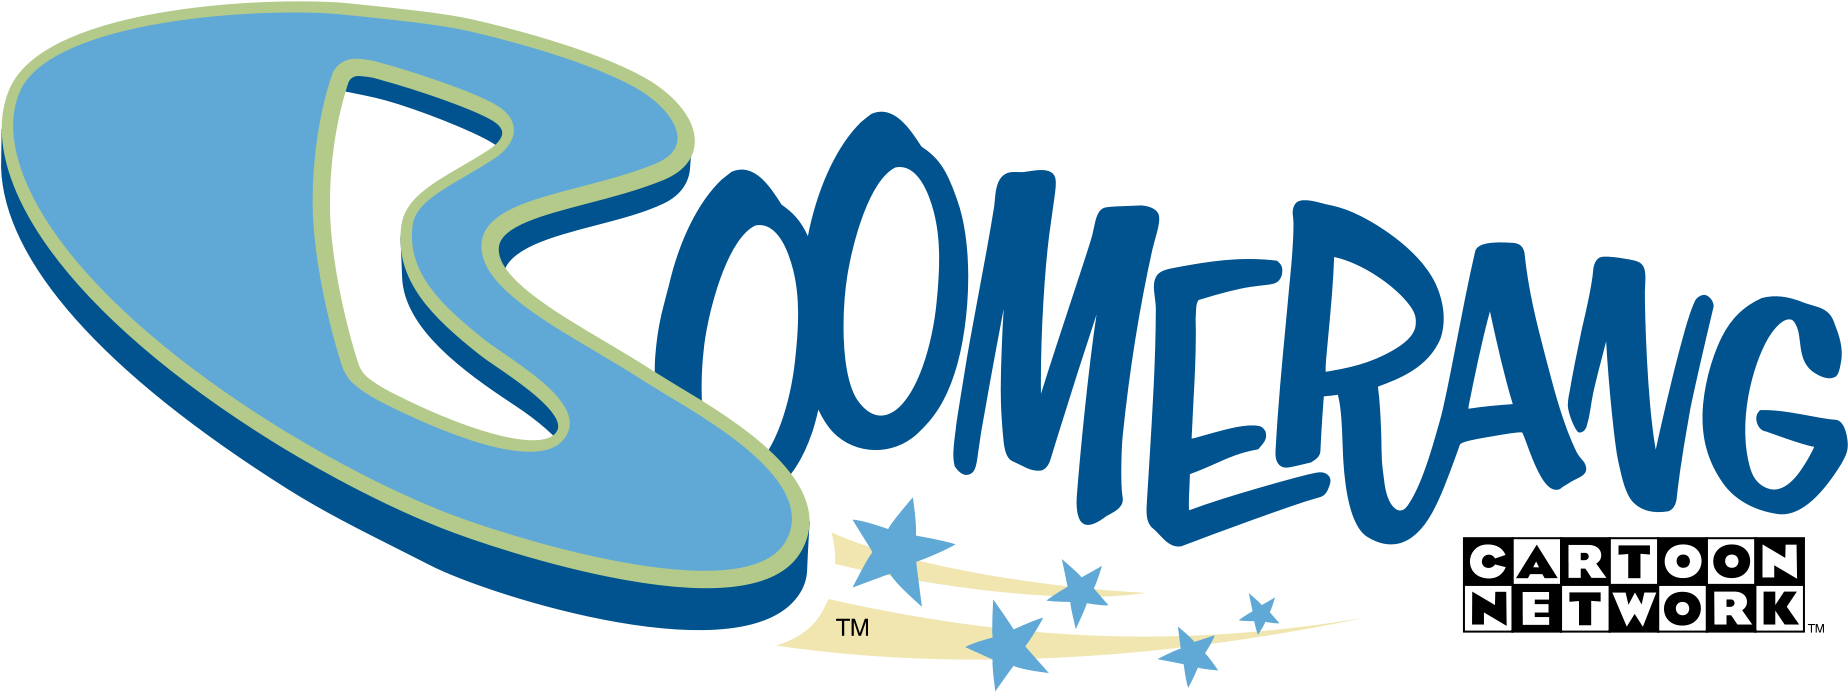 Boomerang Us Logo - Boomerang From Cartoon Network (2000x842), Png Download